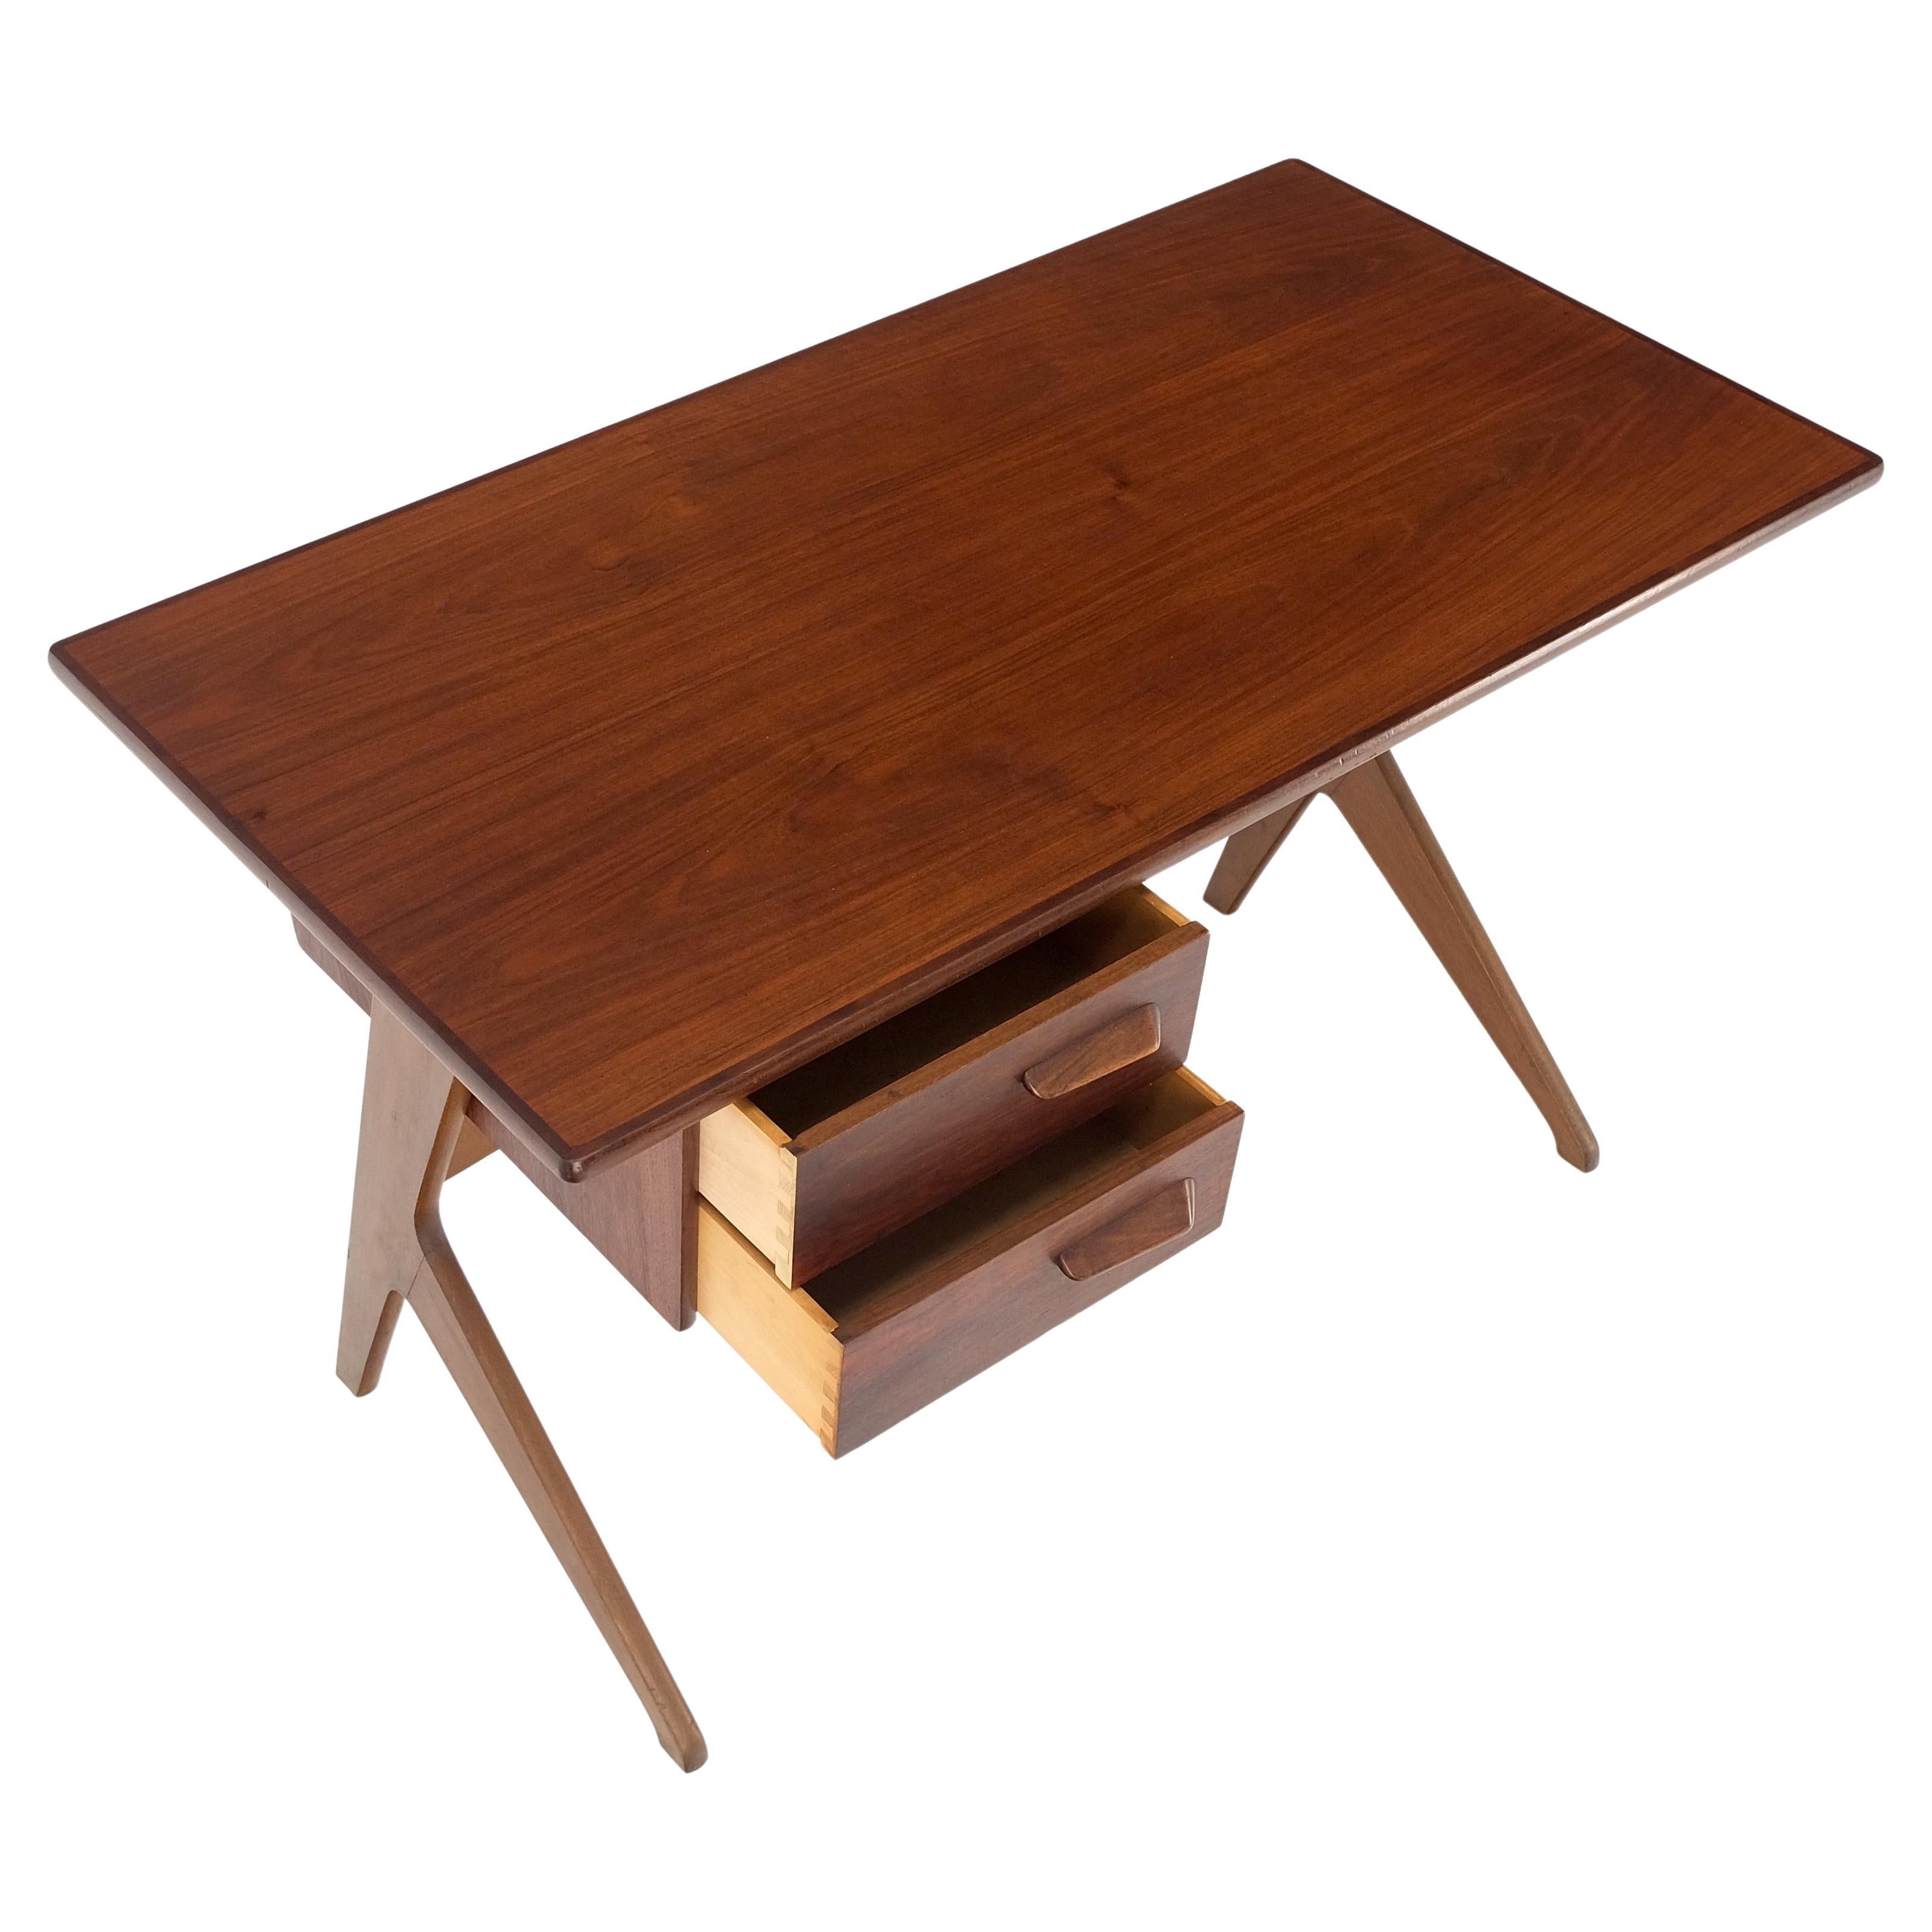 Danish Mid-Century Modern teak asymmetrical z shape base low profile desk mint!